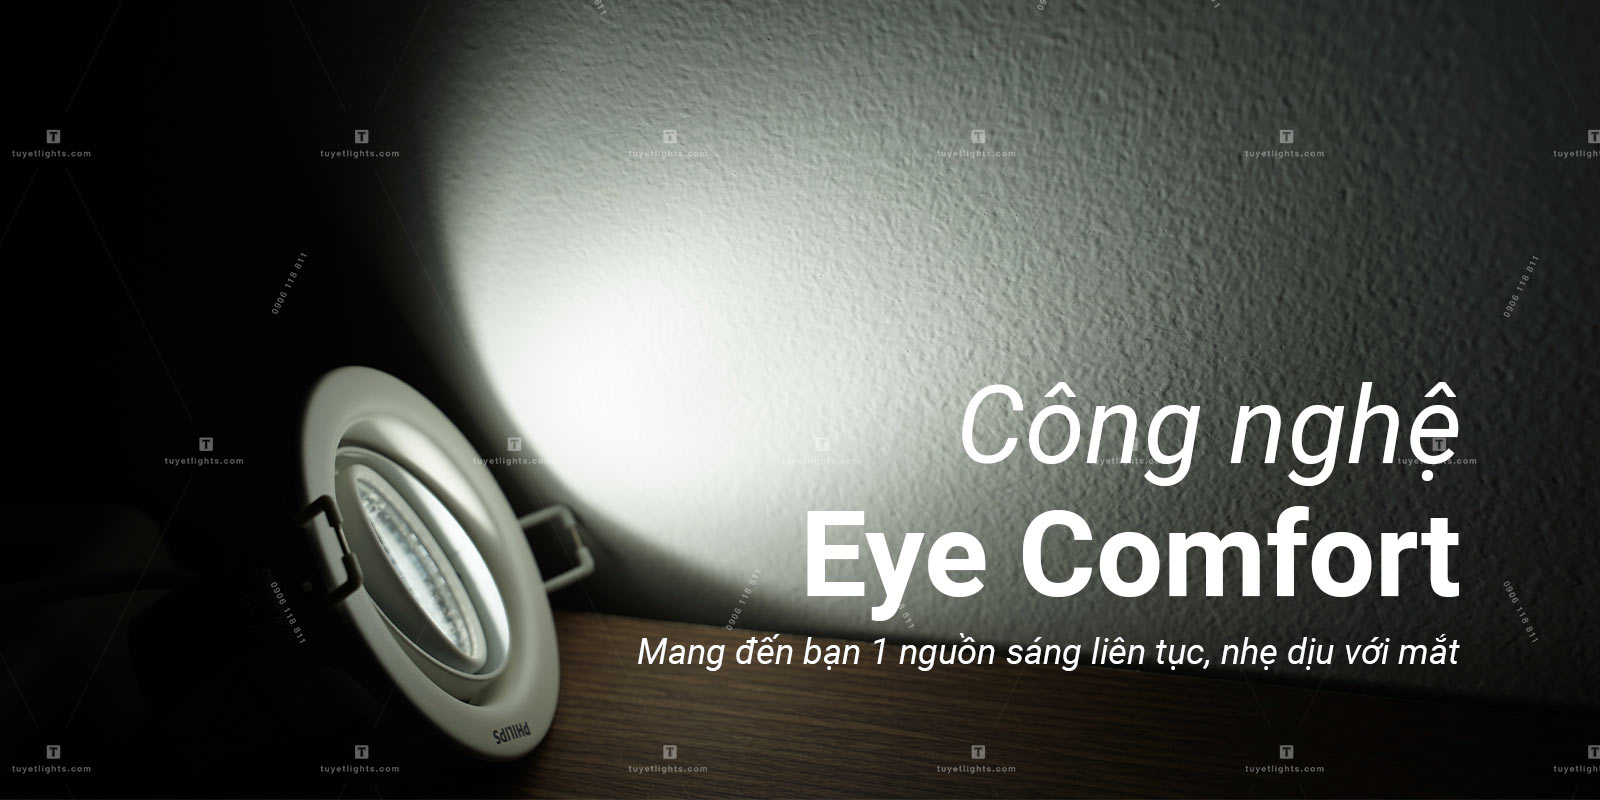 Công nghệ Eyecomfort